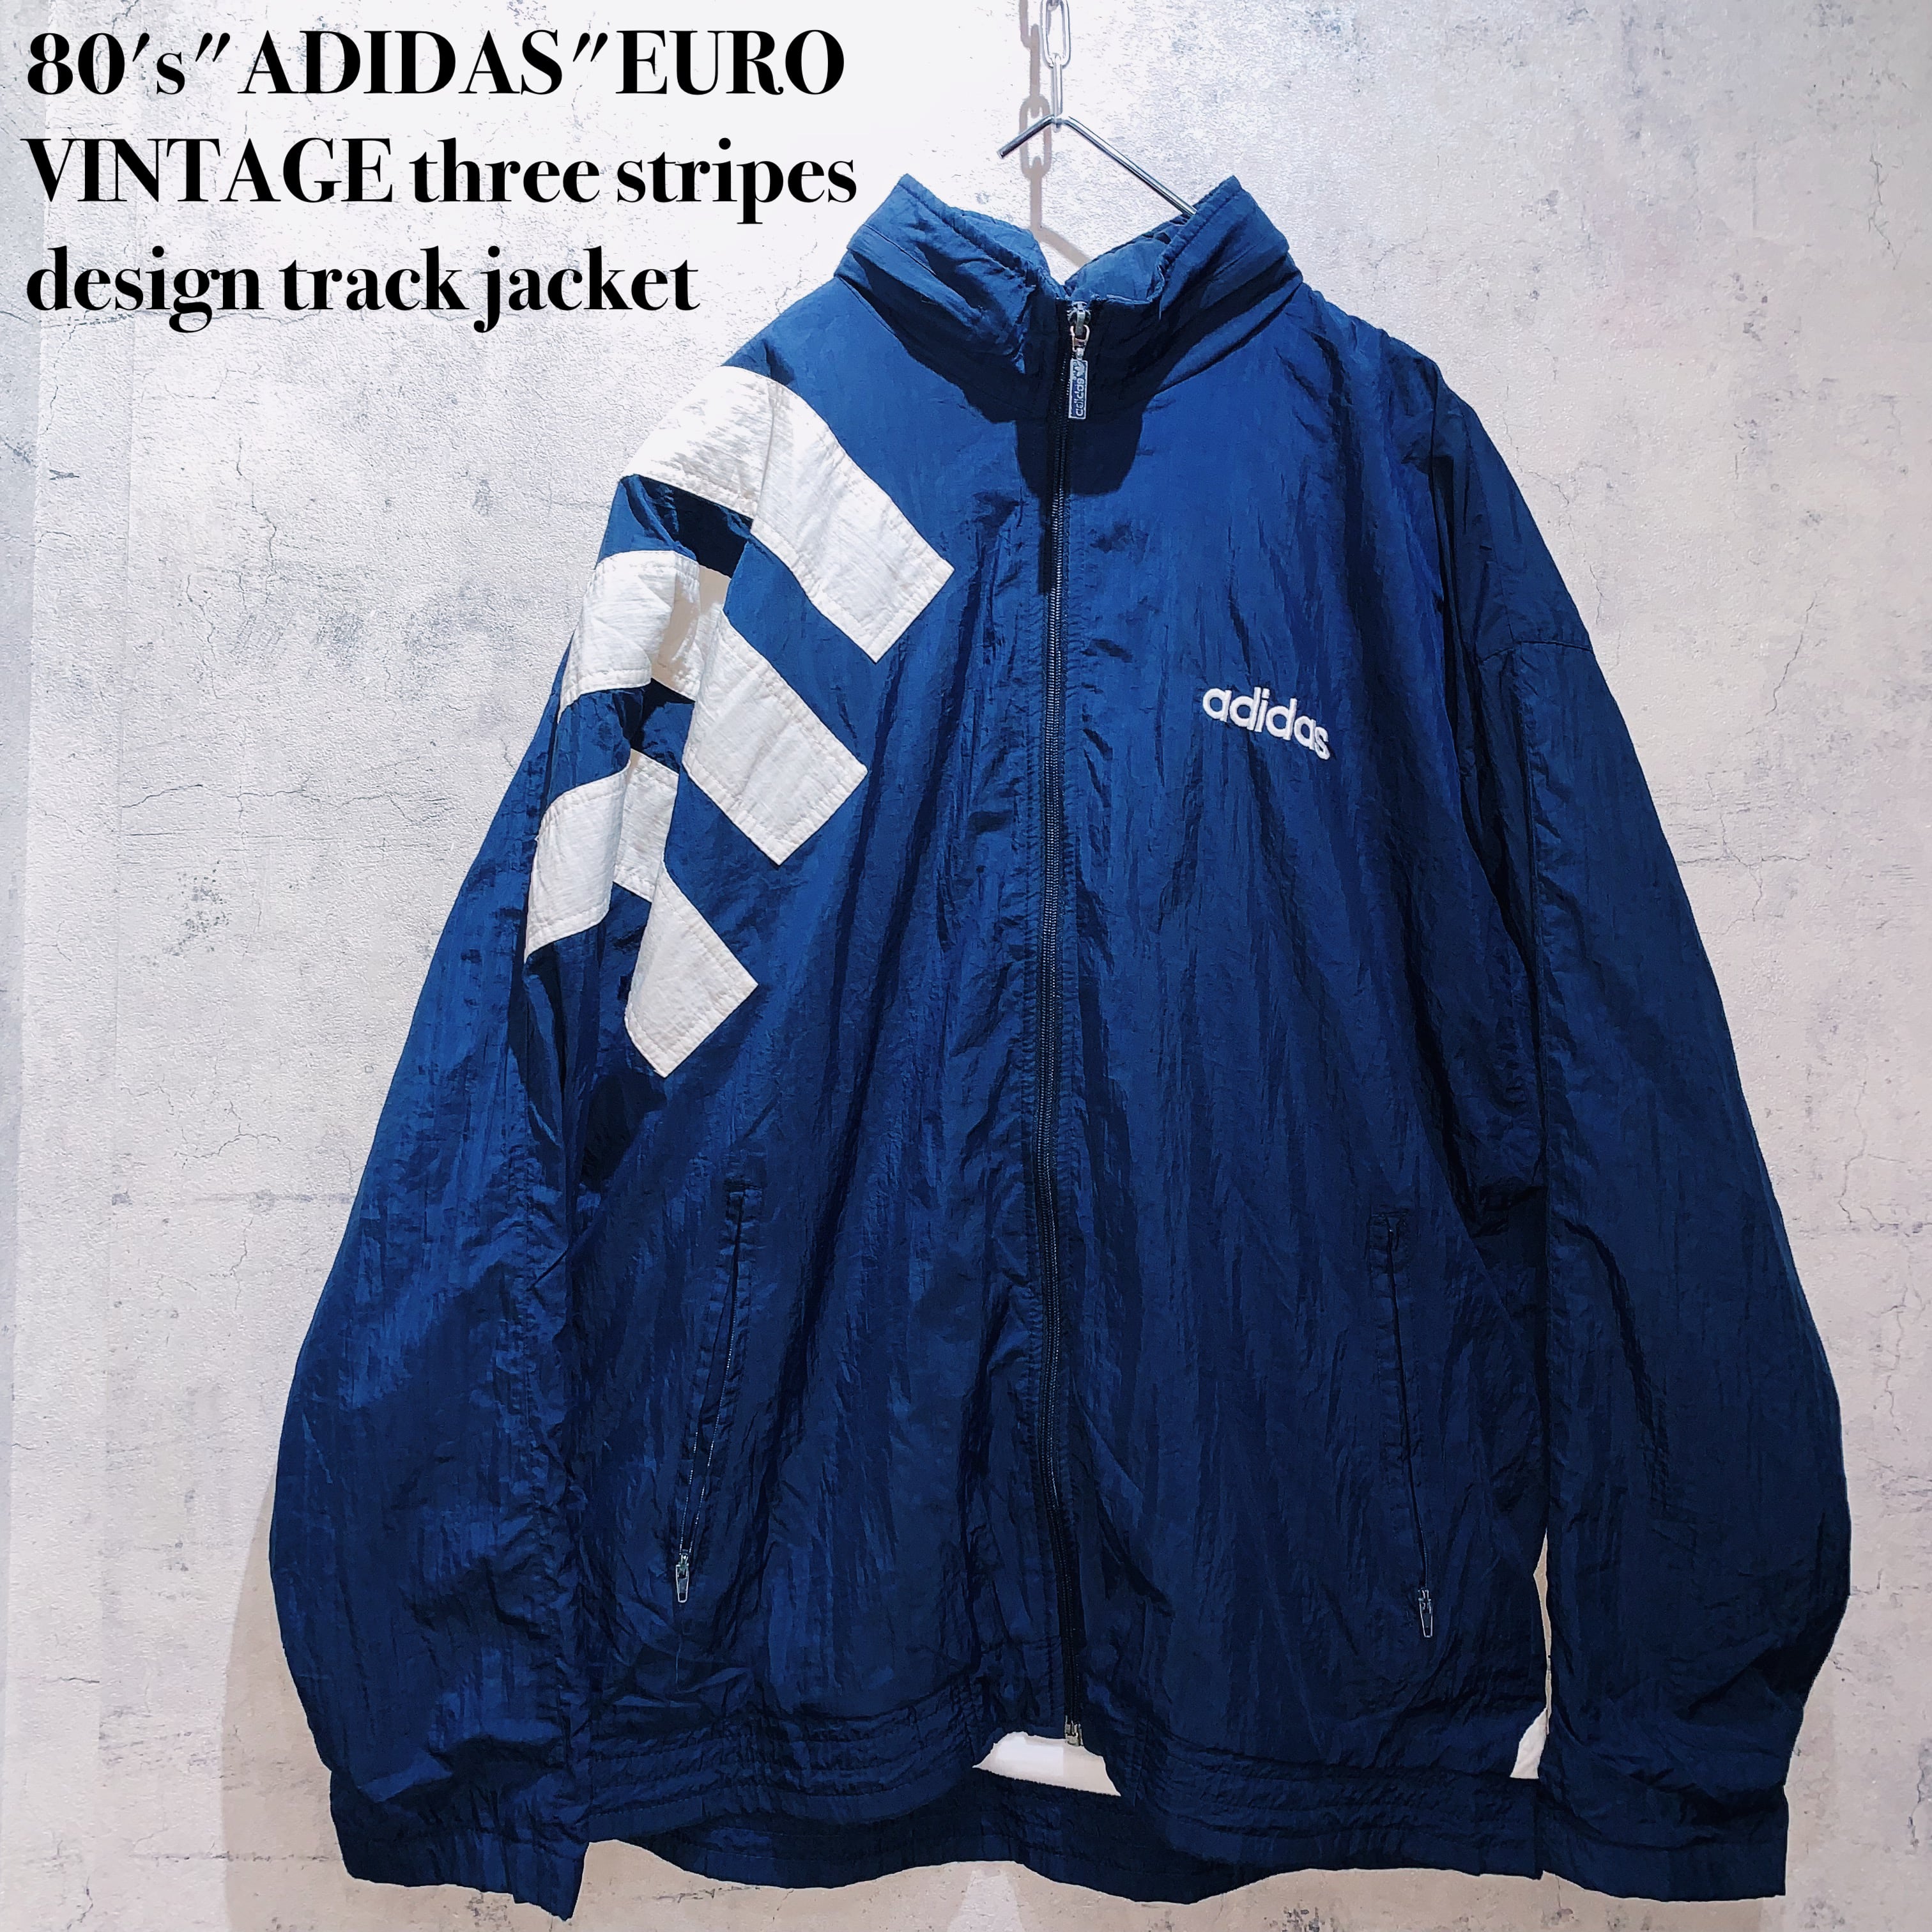 euro vintage track jacket 80s